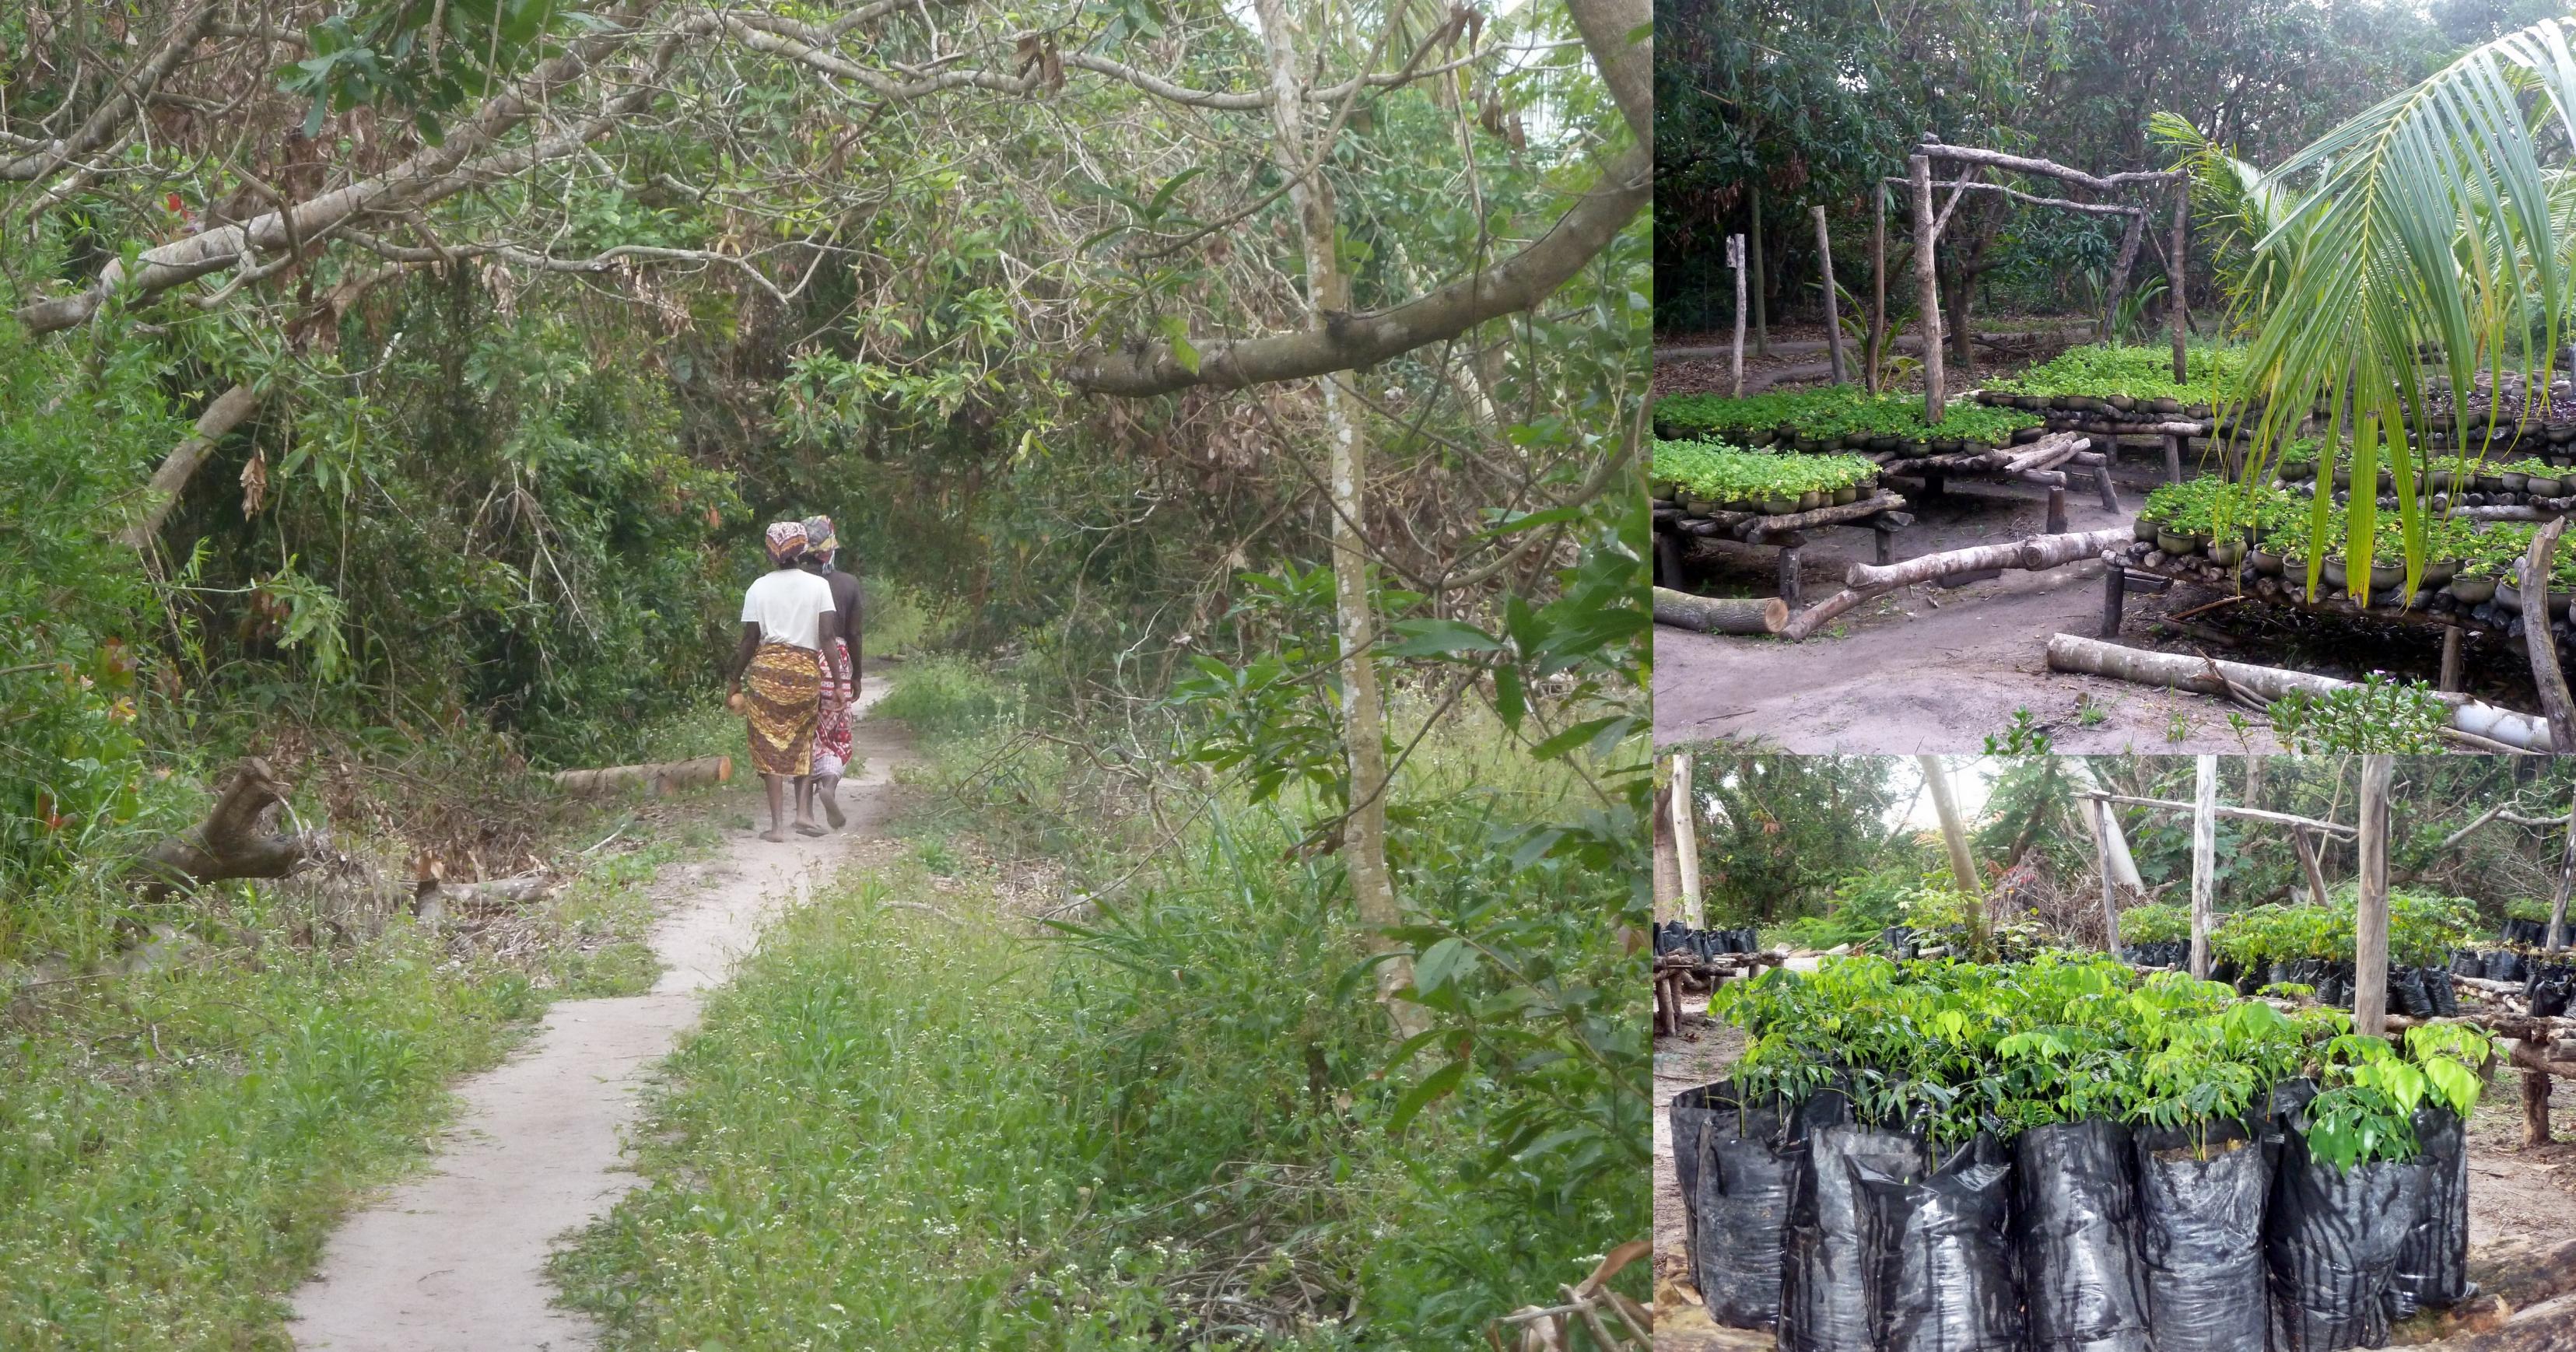 Mehrere Bilder aus Mezimbite – zwei Frauen, die einen Weg durch den Wald gehen und Eindrücke aus der Baumschule.